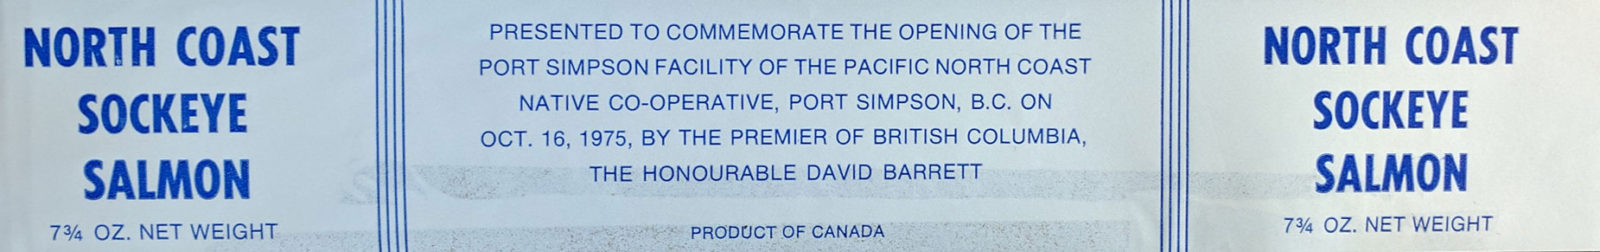 Une étiquette en bleu monochrome sans image et le texte : « North Coast Sockeye Salmon ». Présentée pour souligner l'ouverture des installations de Port Simpson de la coopérative Pacific North Coast Native de Port Simpson, C.-B. le 18 octobre 1975 par le premier ministre de la Colombie-Britannique, l'honorable Dave Barrett.